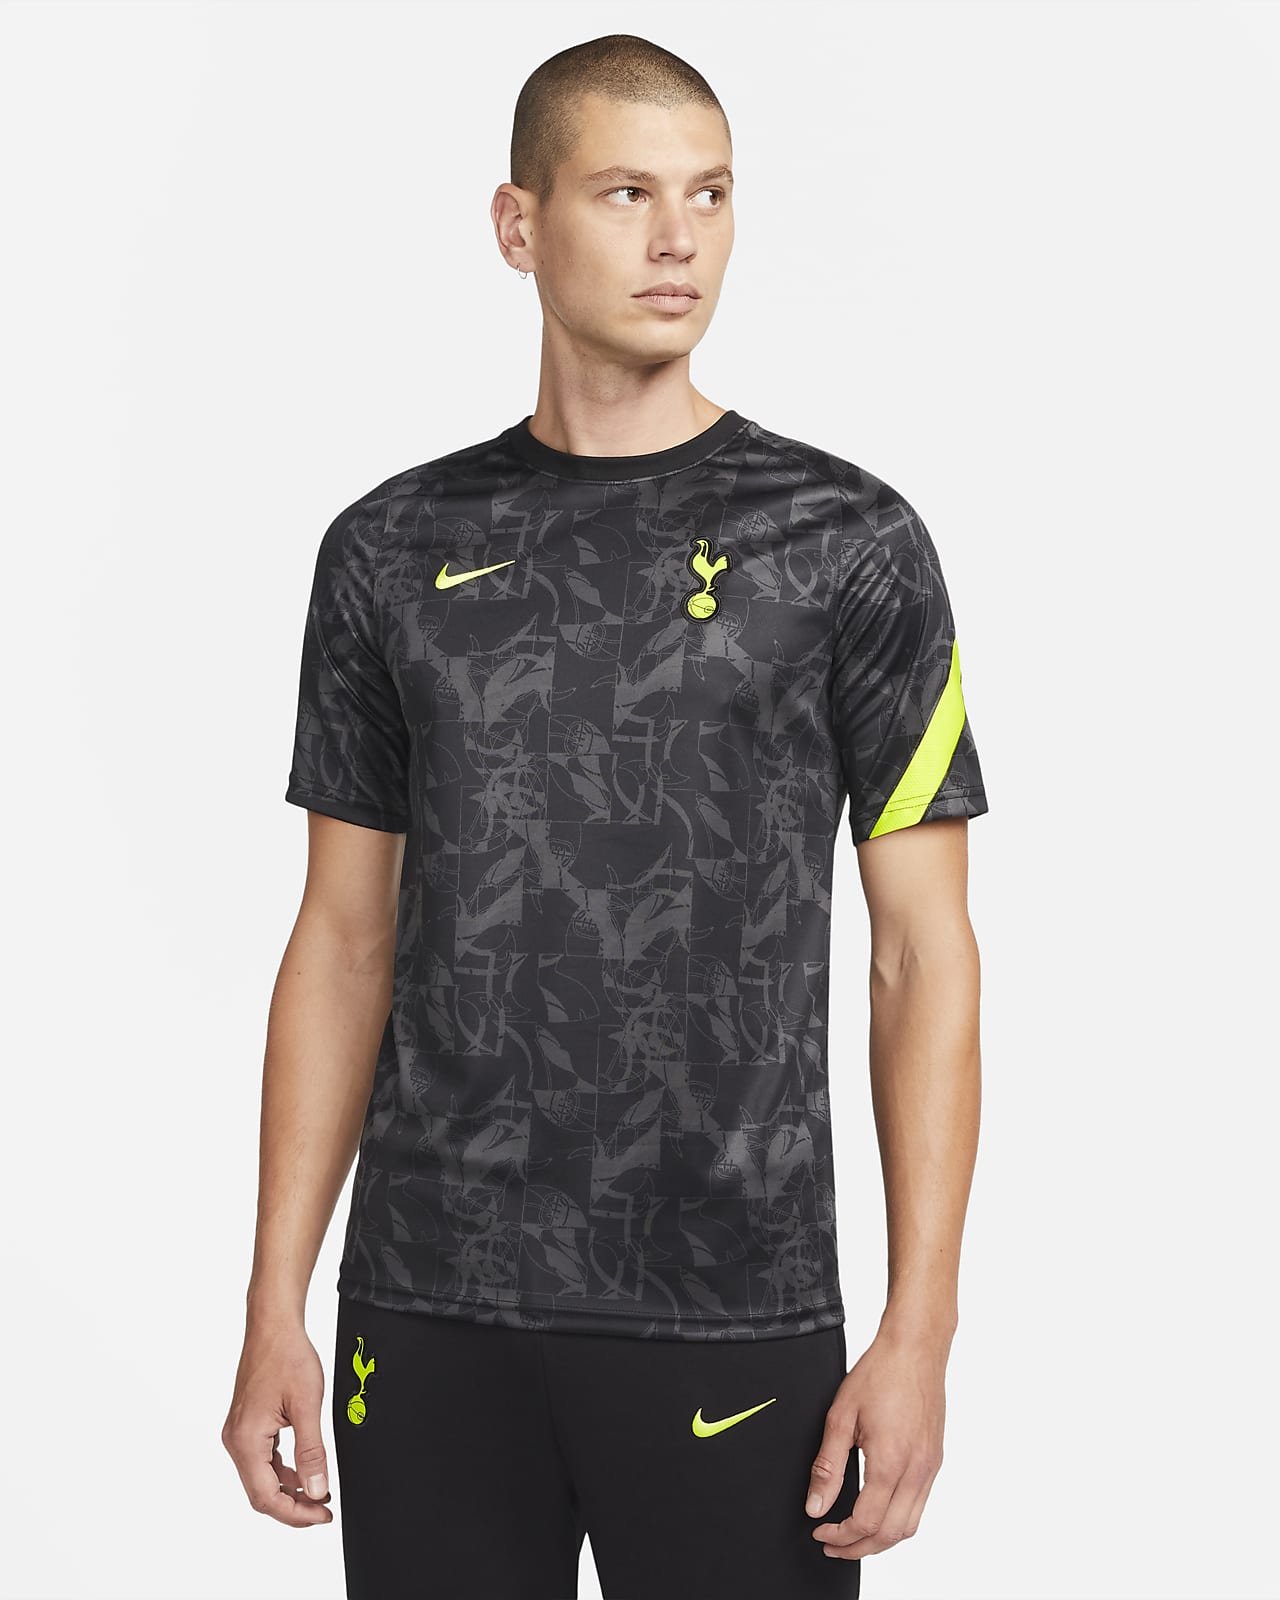 Tottenham Hotspur Baby Away Kit 2017/18 - Official Nike Kit